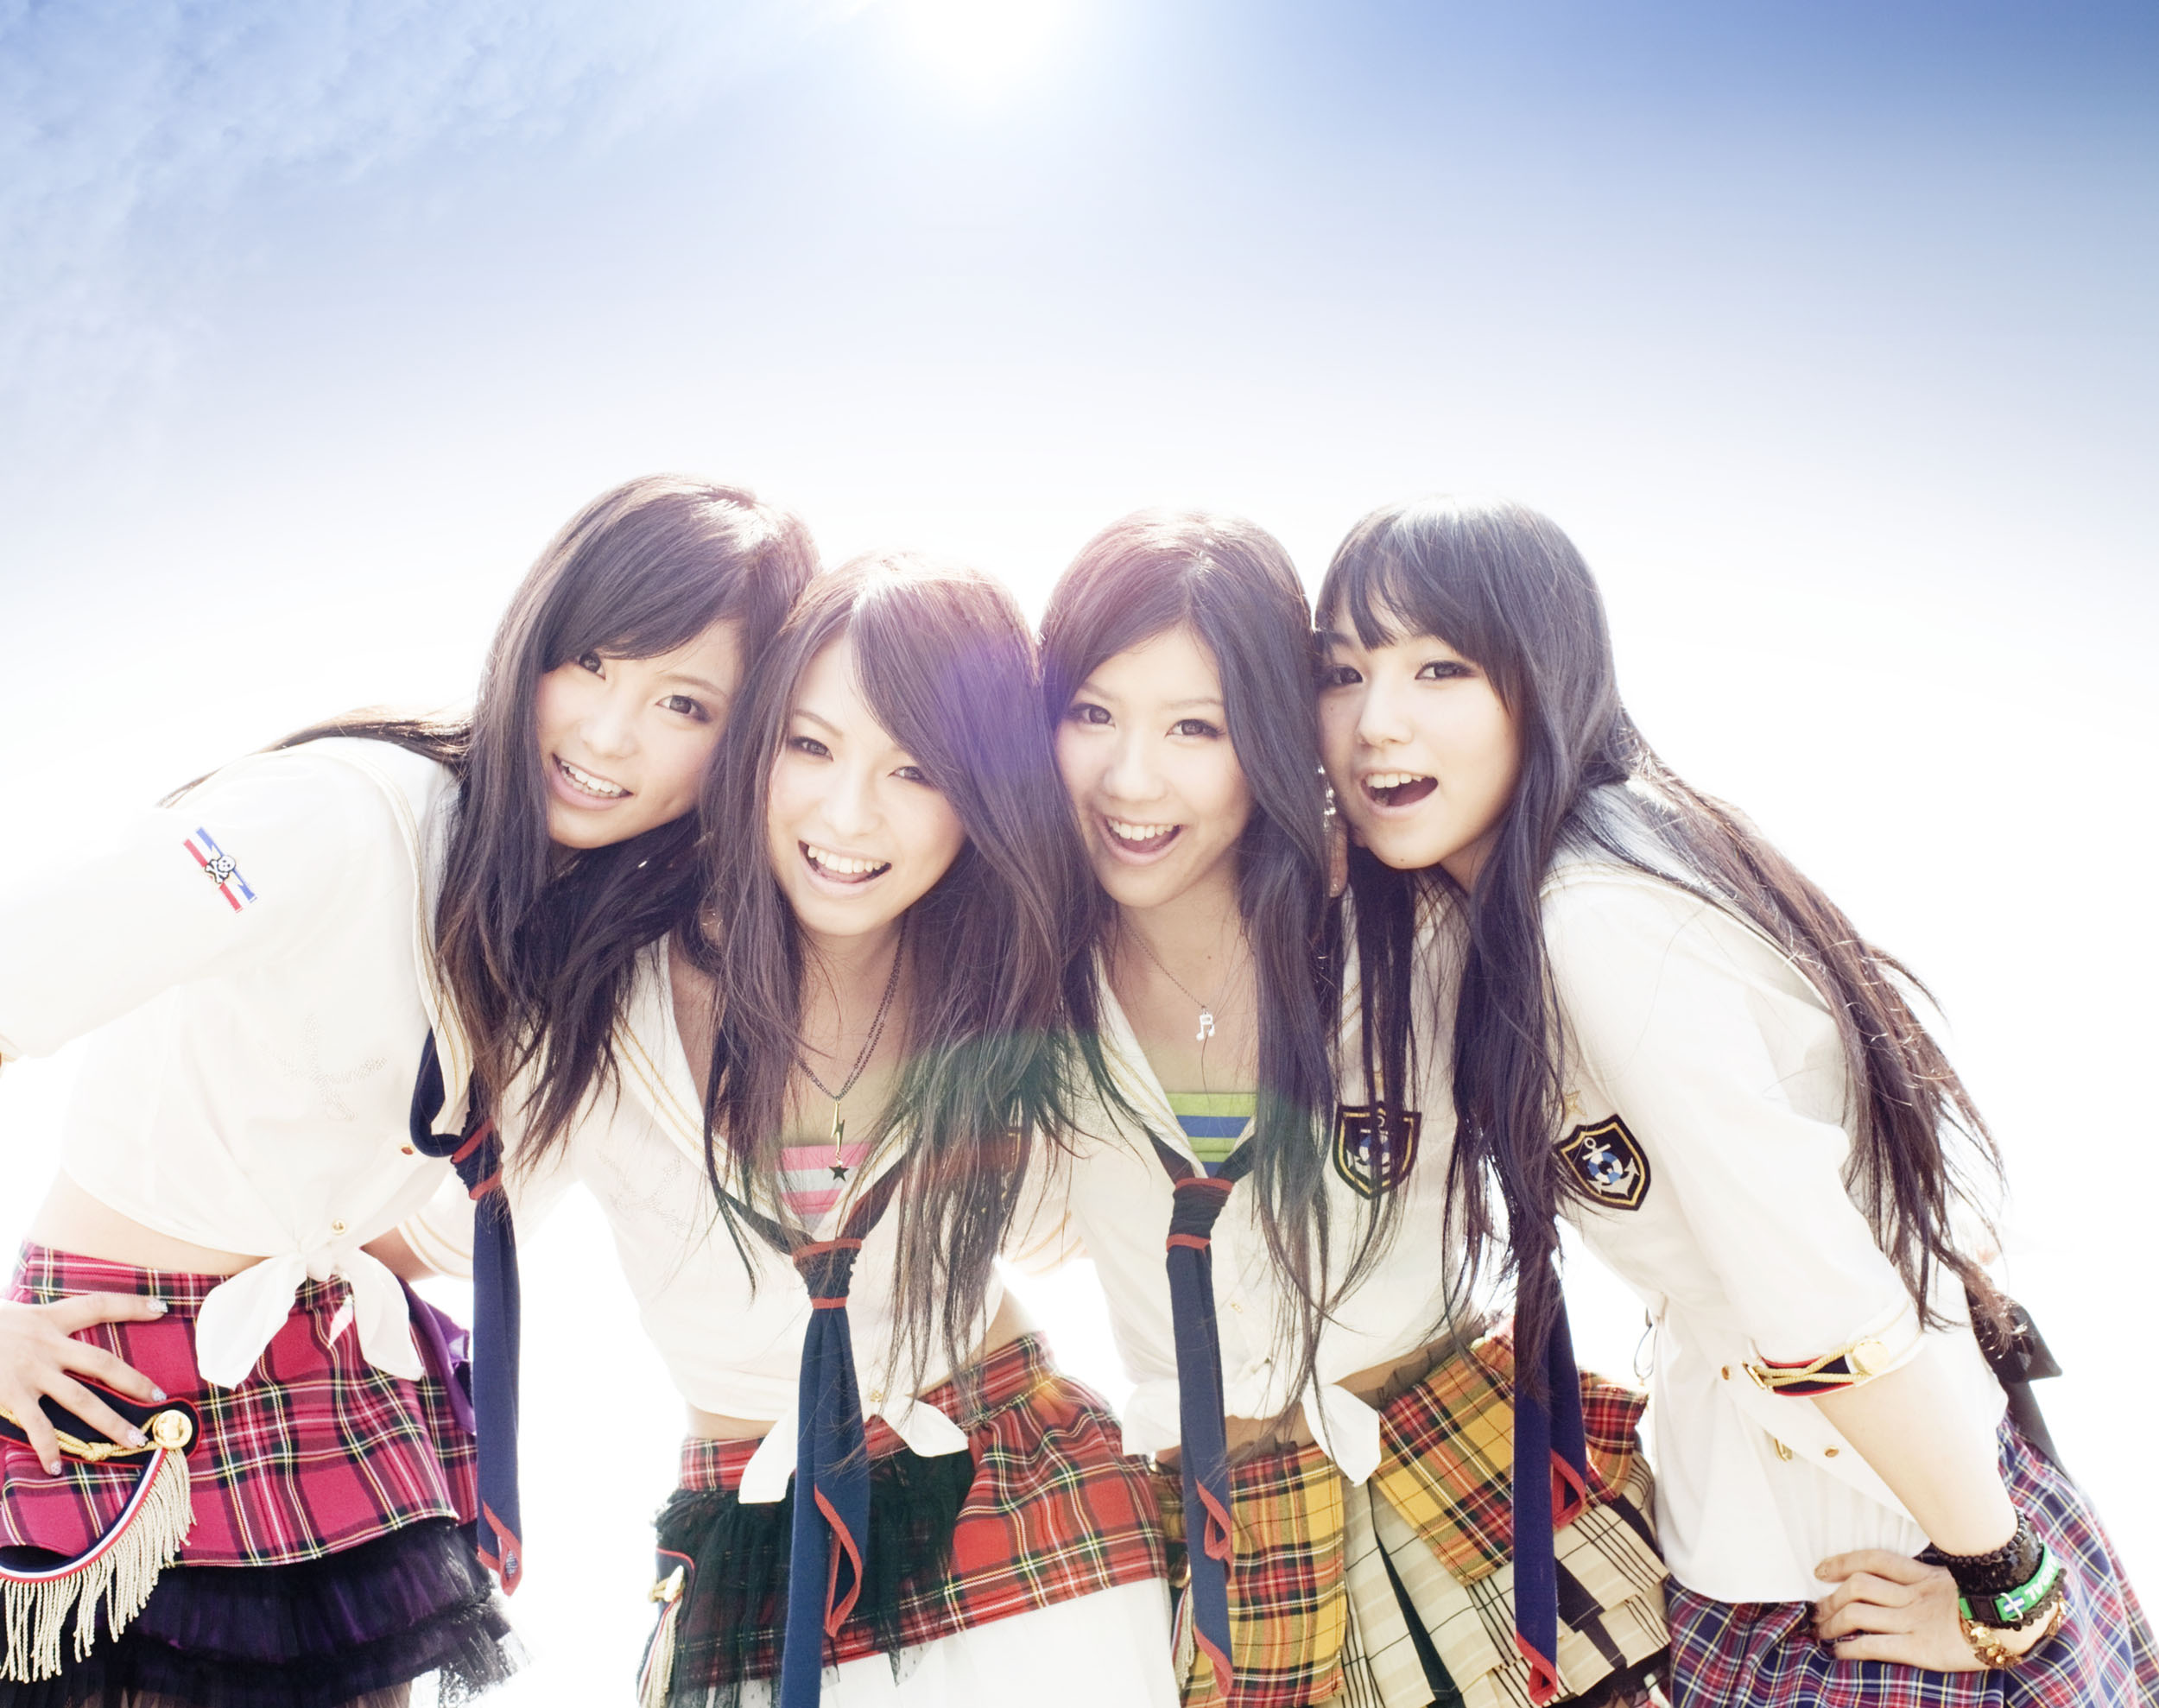 日本女の子バンドのスキャンダル Scandal Photo 36309229 Fanpop